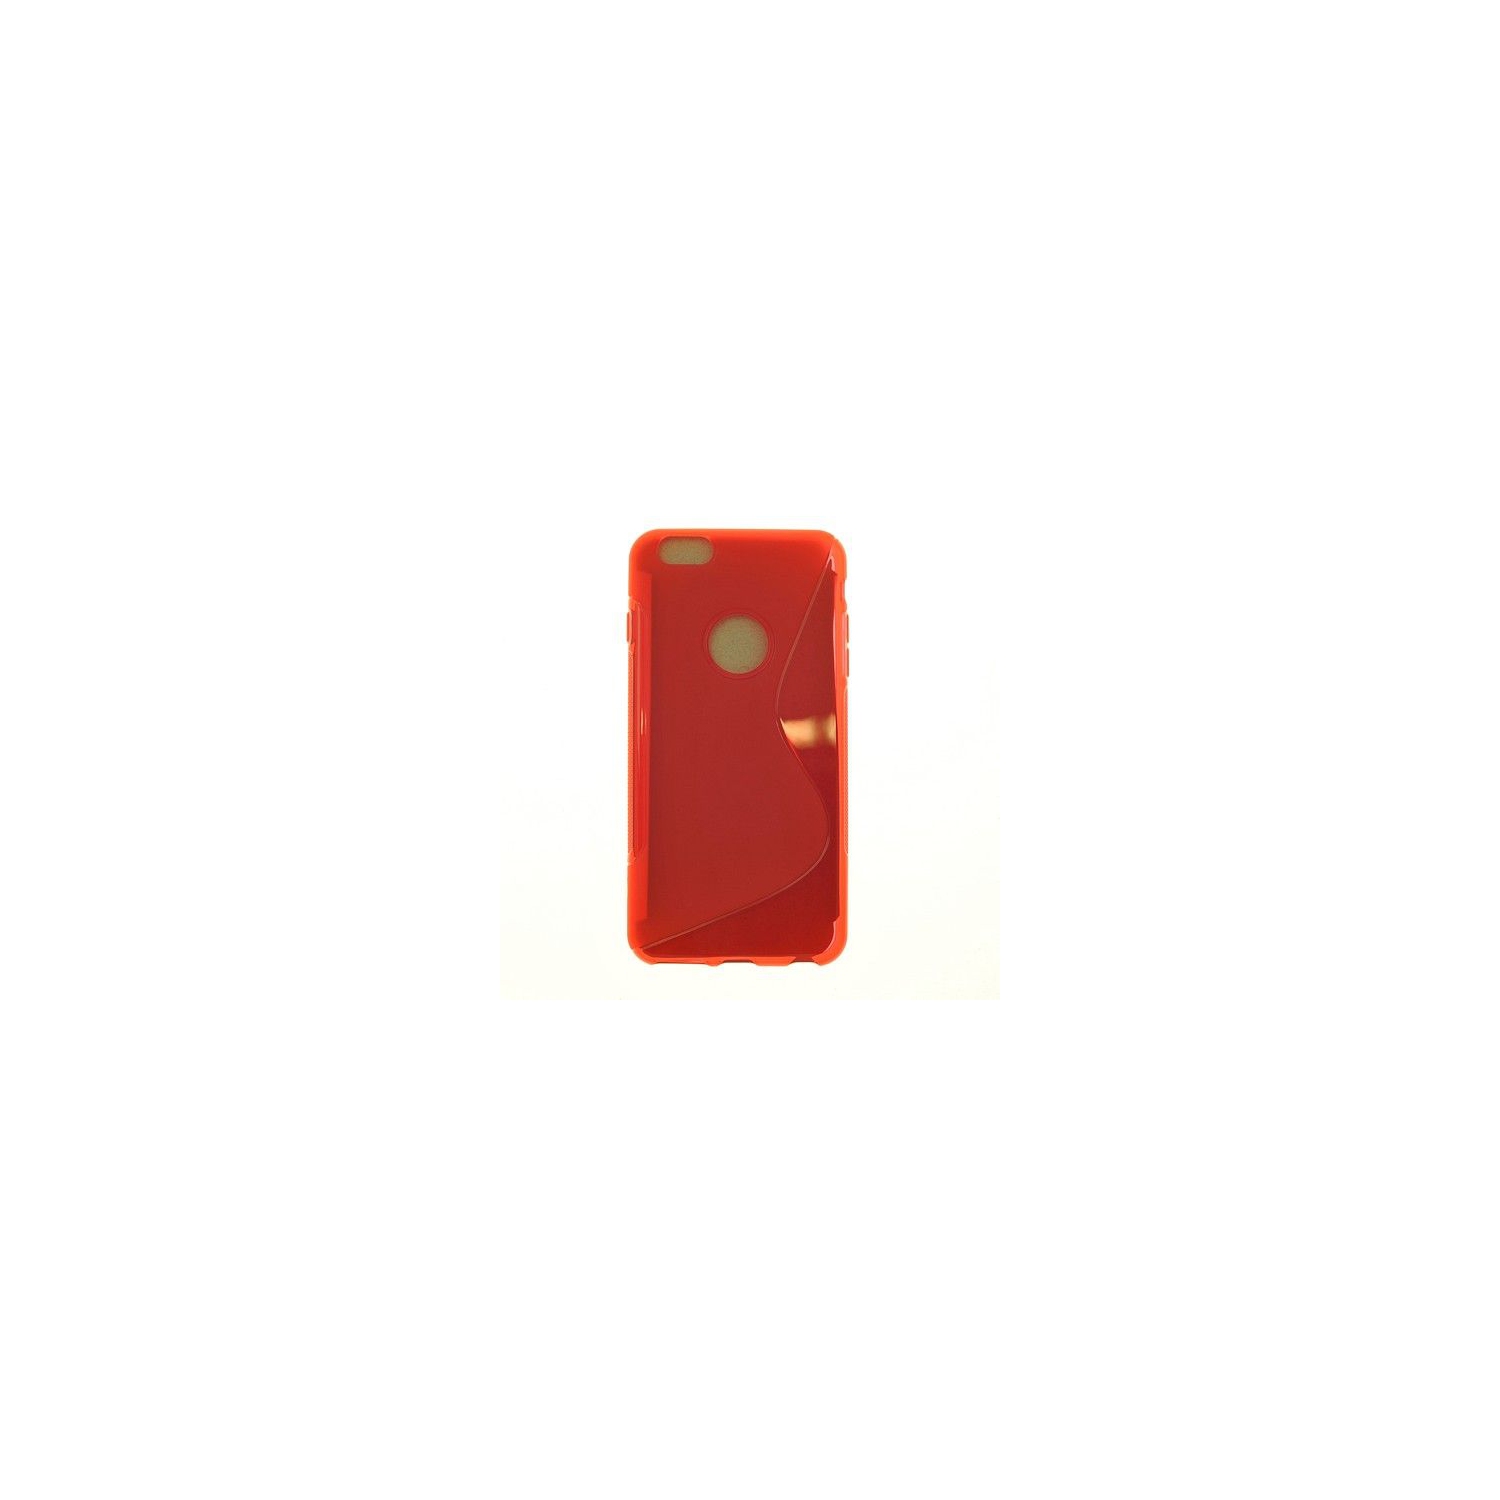 Iphone 6 Plus, Iphone 6s Plus S Line Design Soft Case, Red